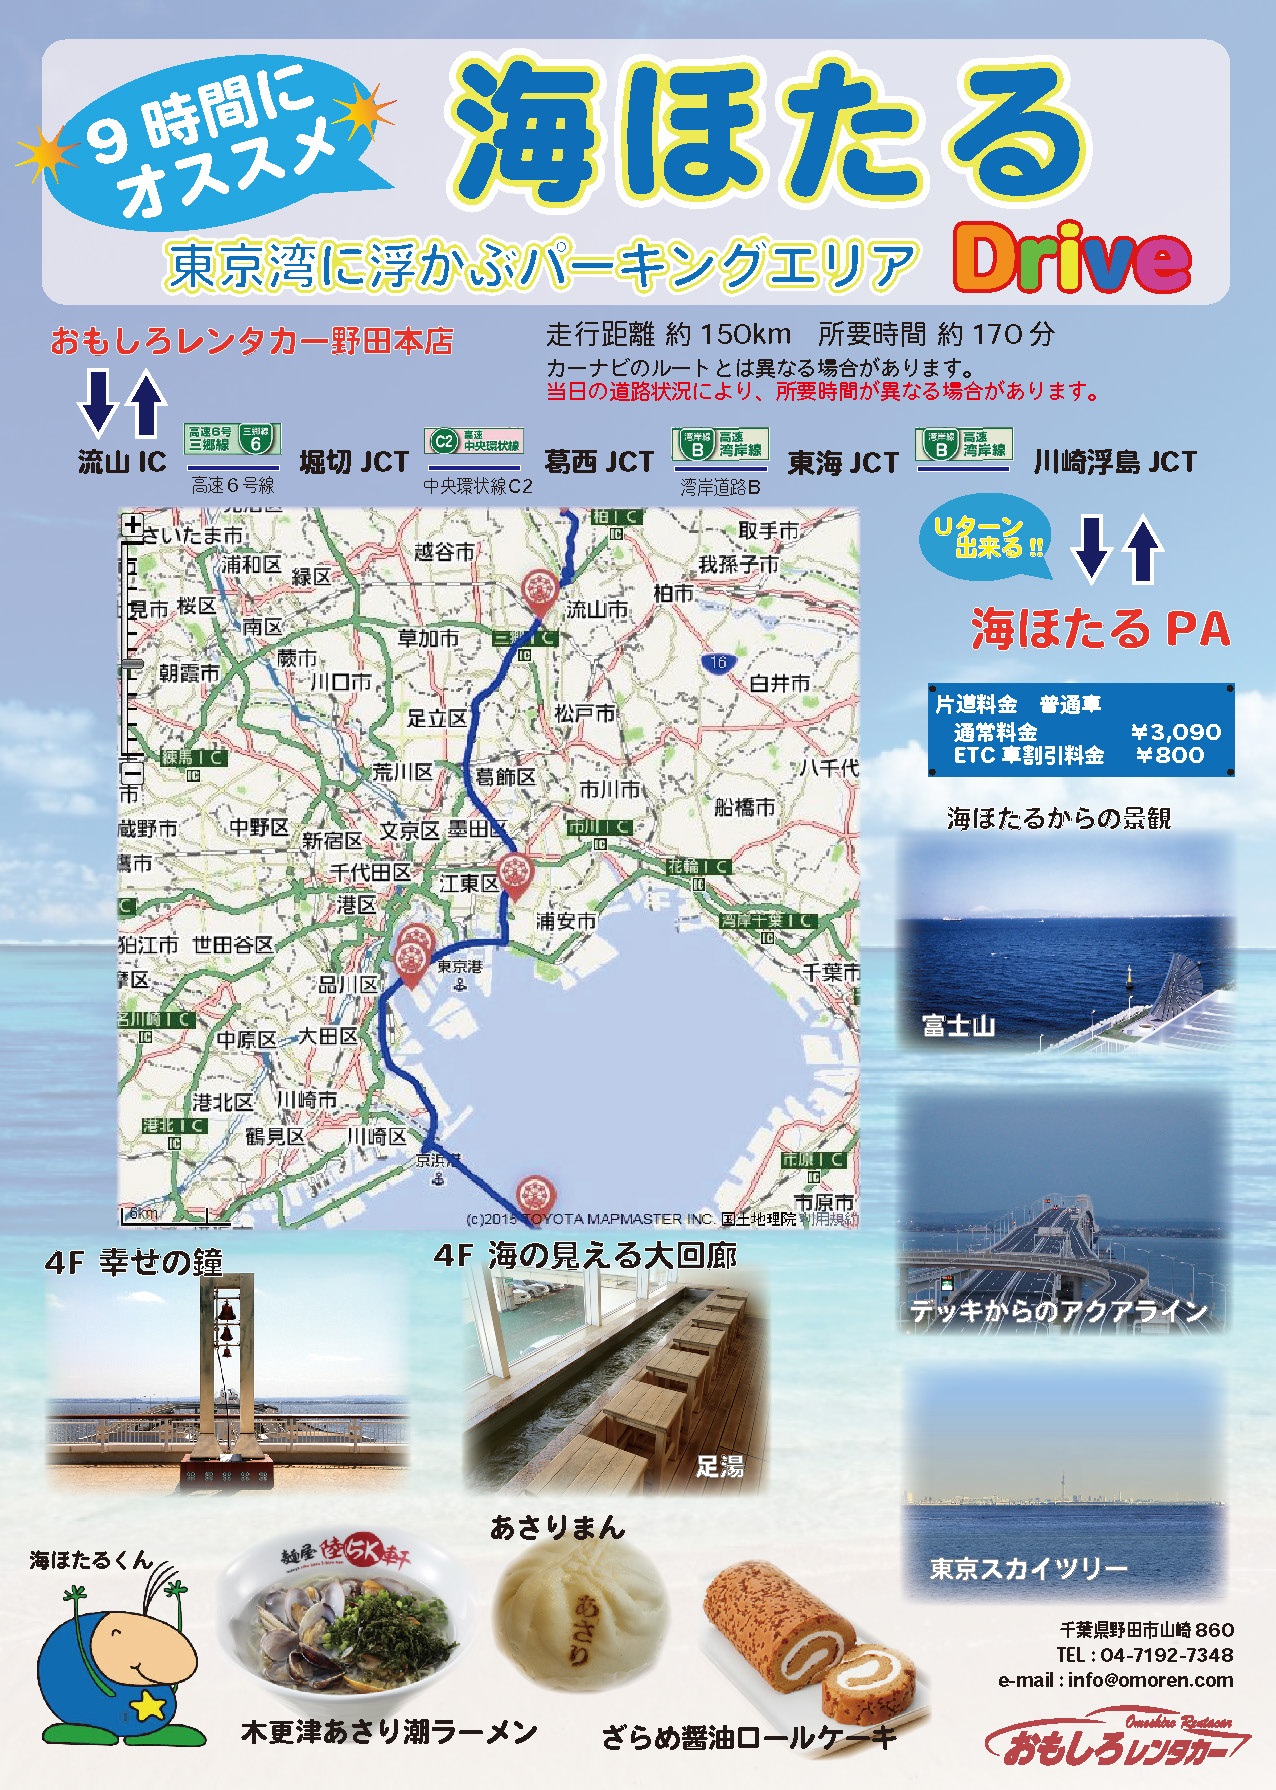 海ほたる東京湾に浮かぶパーキンエリア9時間ドライブコース